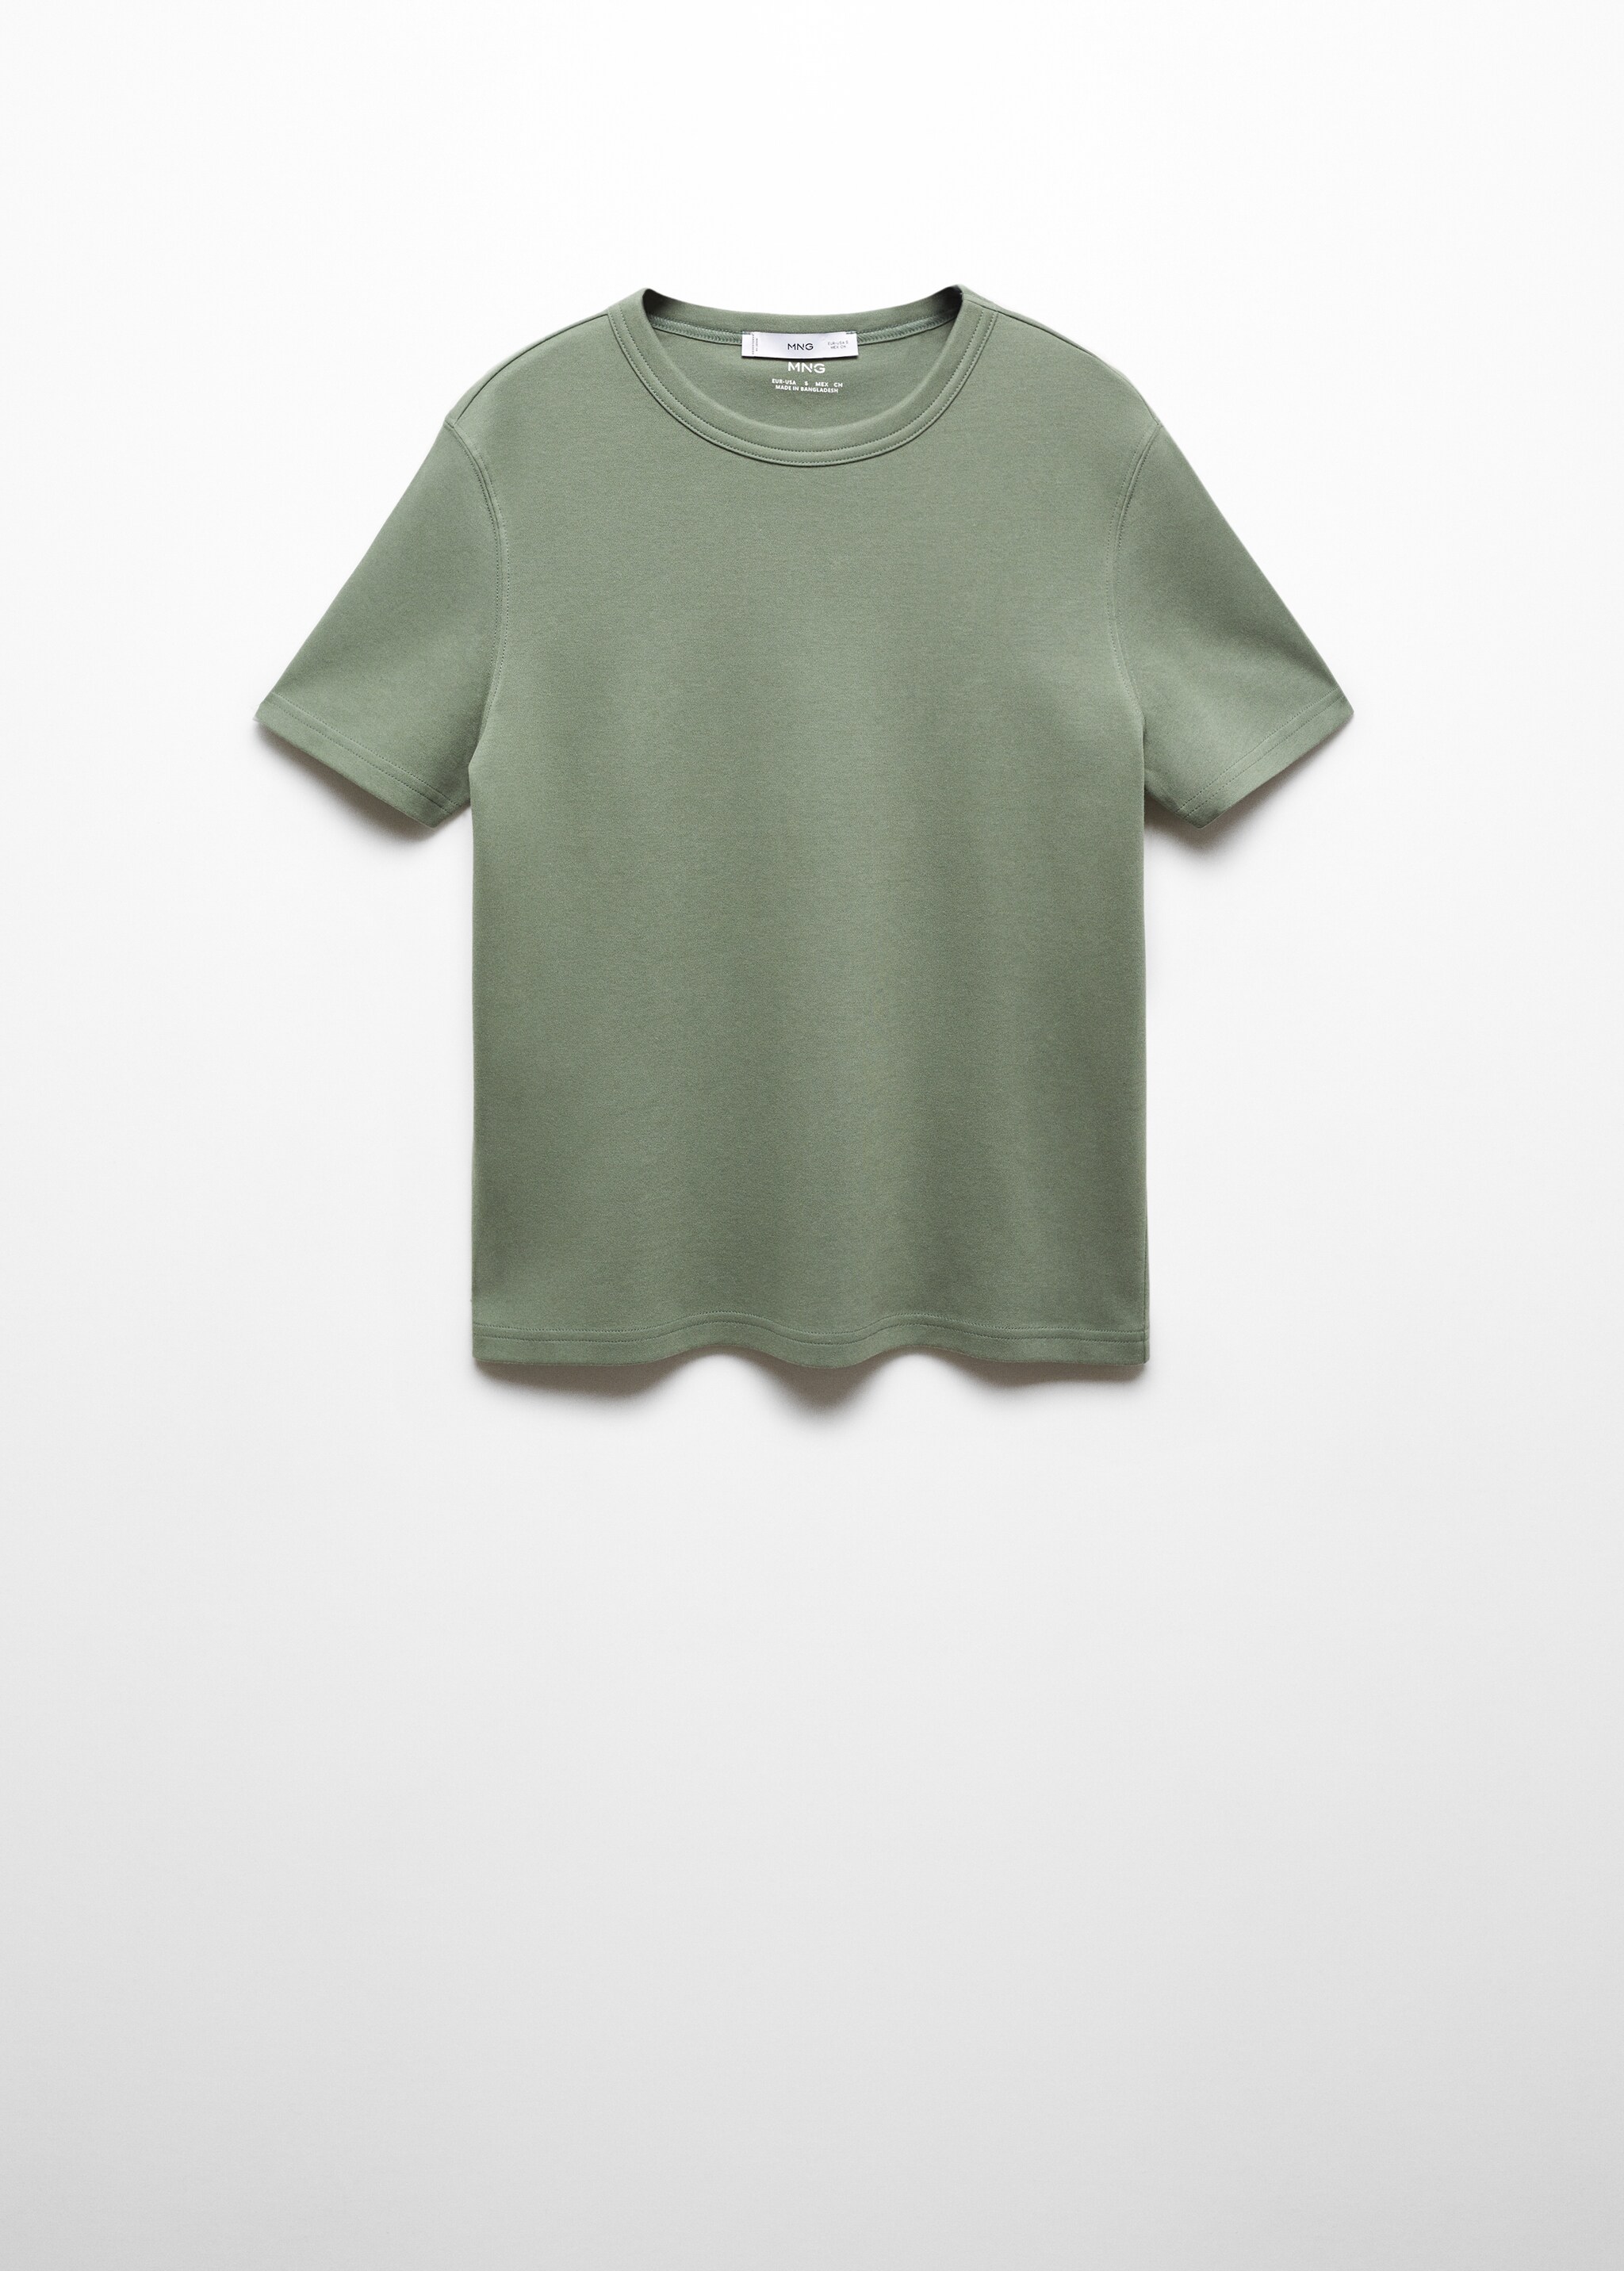 Camiseta premium algodón - Artículo sin modelo